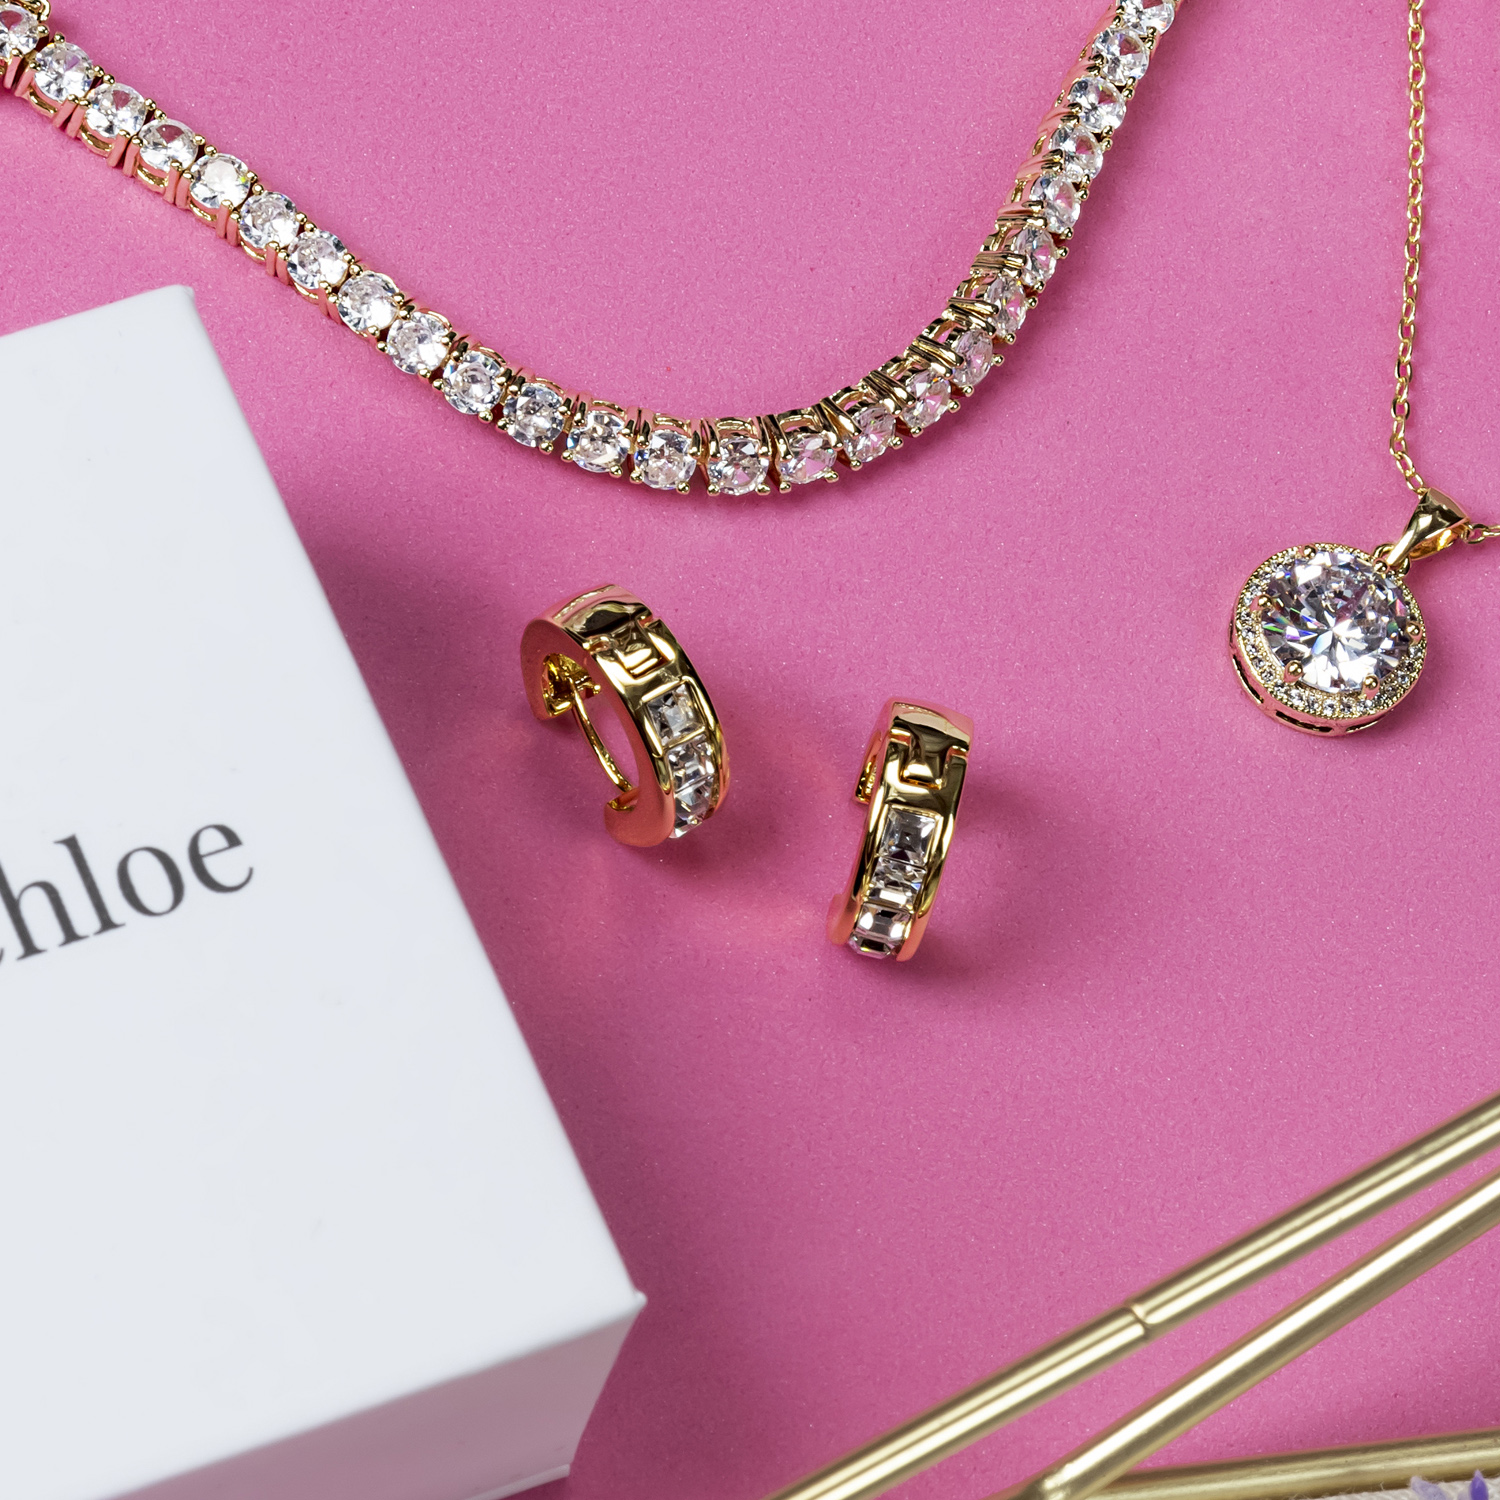 Cate & Chloe Giselle 18k Rose Gold Plated Hoop Earrings | Women's Crystal Earrings, Gift for Her - image 5 of 11